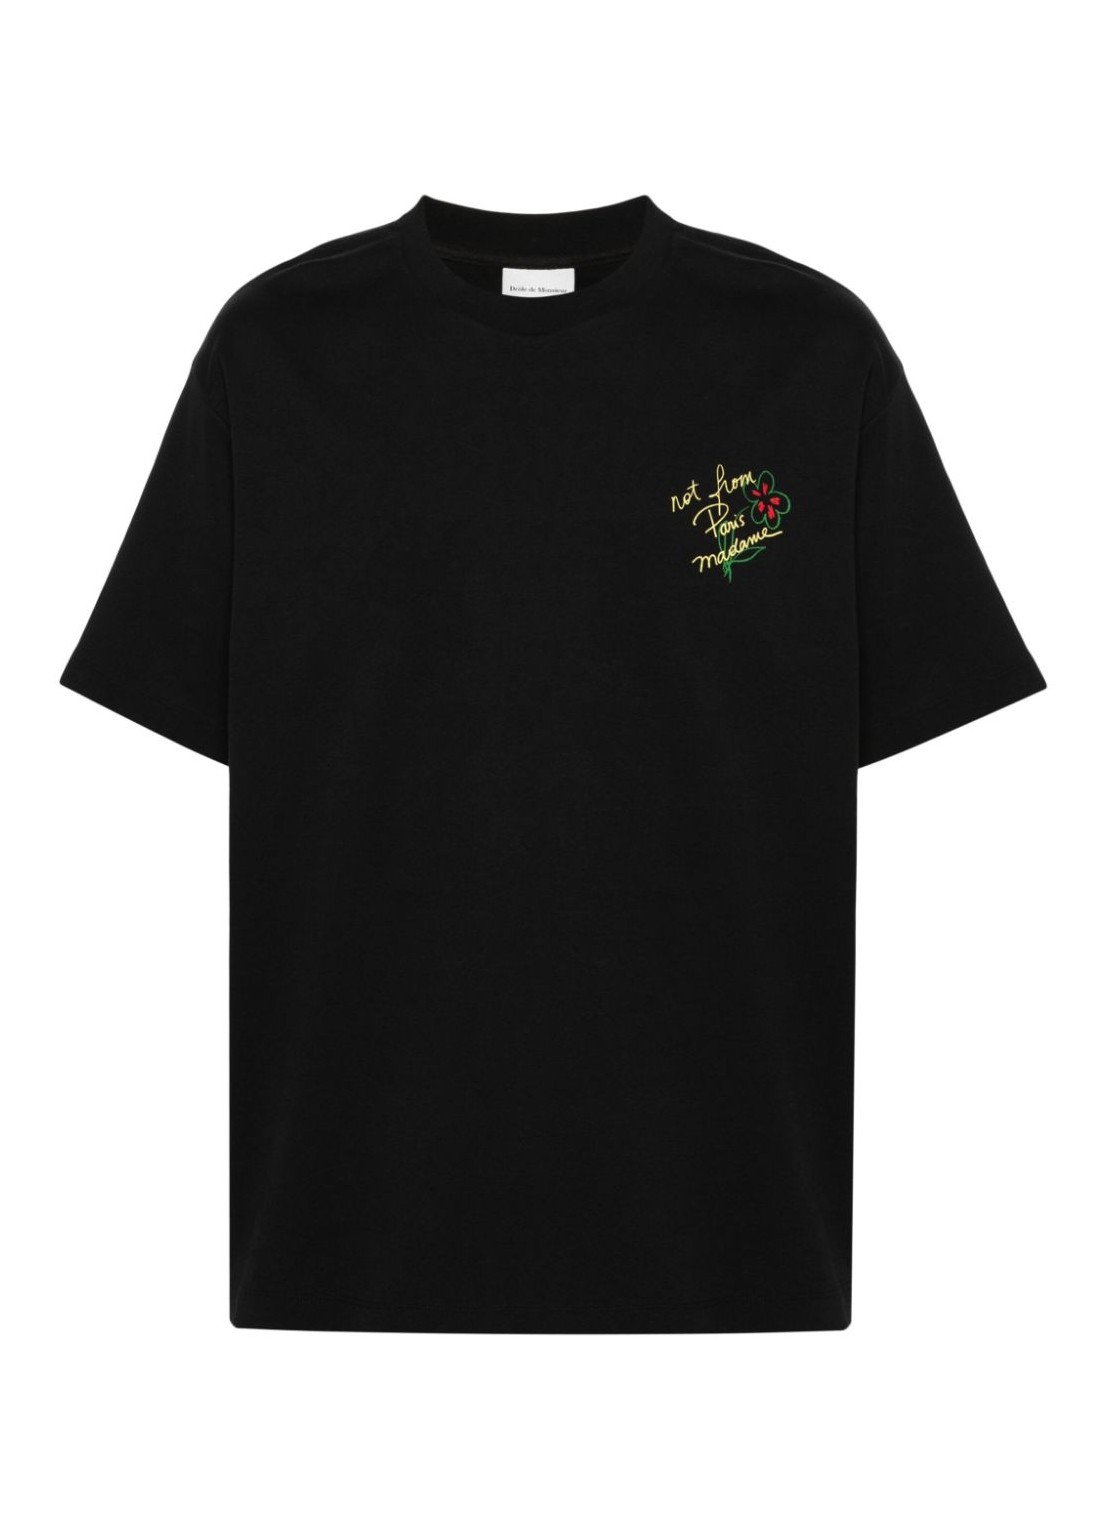 Camiseta drole de monsieur t-shirt man le t-shirt slogan esquisse dts188co002bl black talla S
 